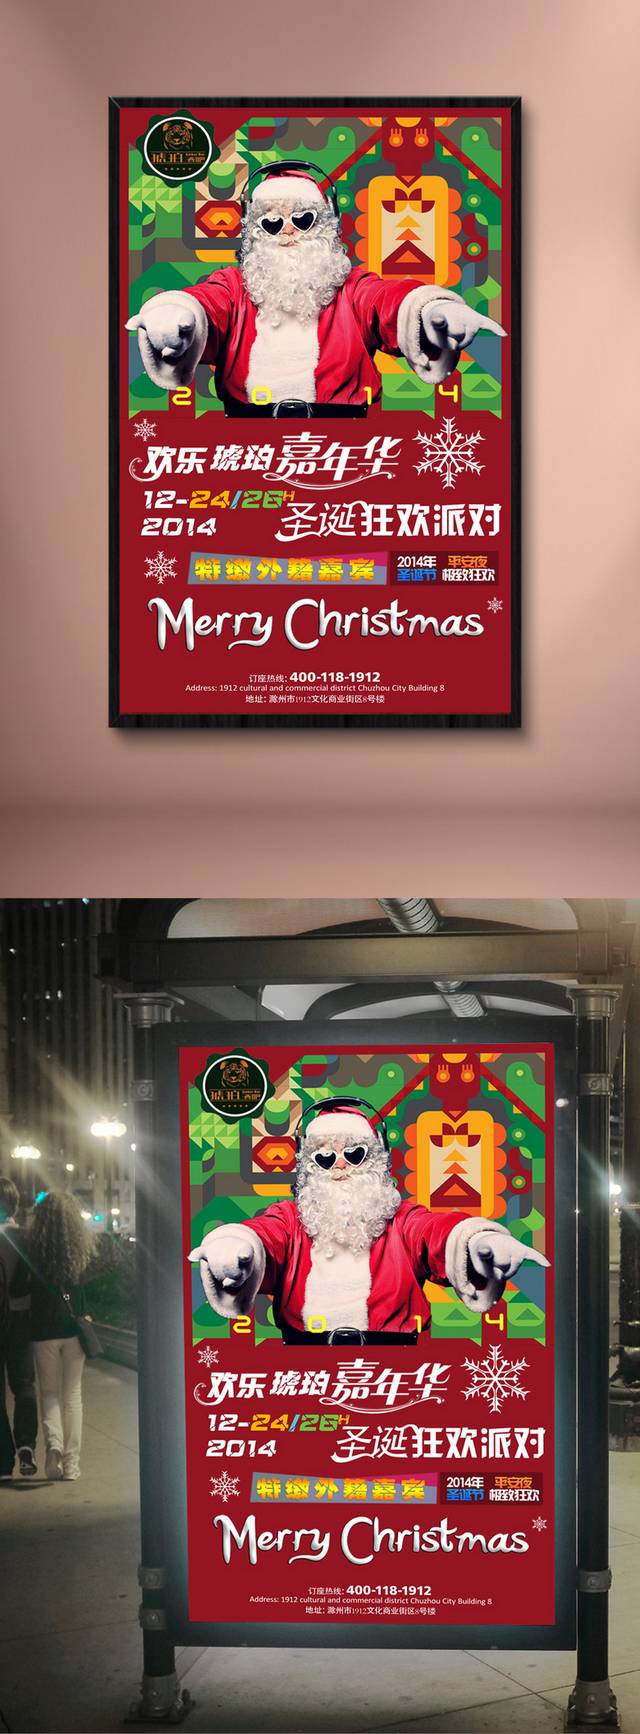 欢乐圣诞嘉年华海报